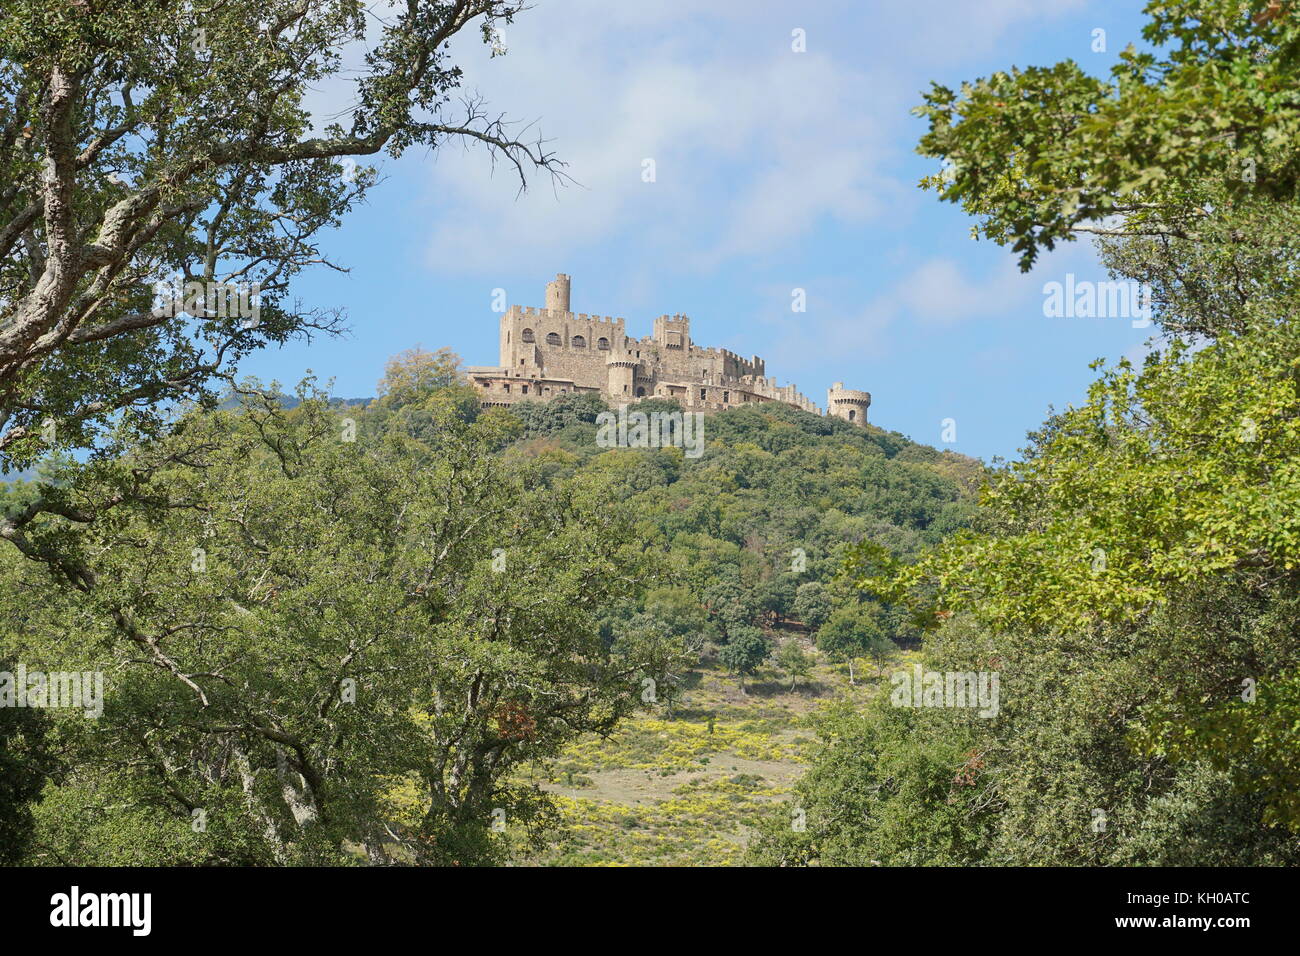 Le château de requesens en haut de la colline, la Jonquera, Alt Emporda, Gérone, Catalogne, Espagne Banque D'Images